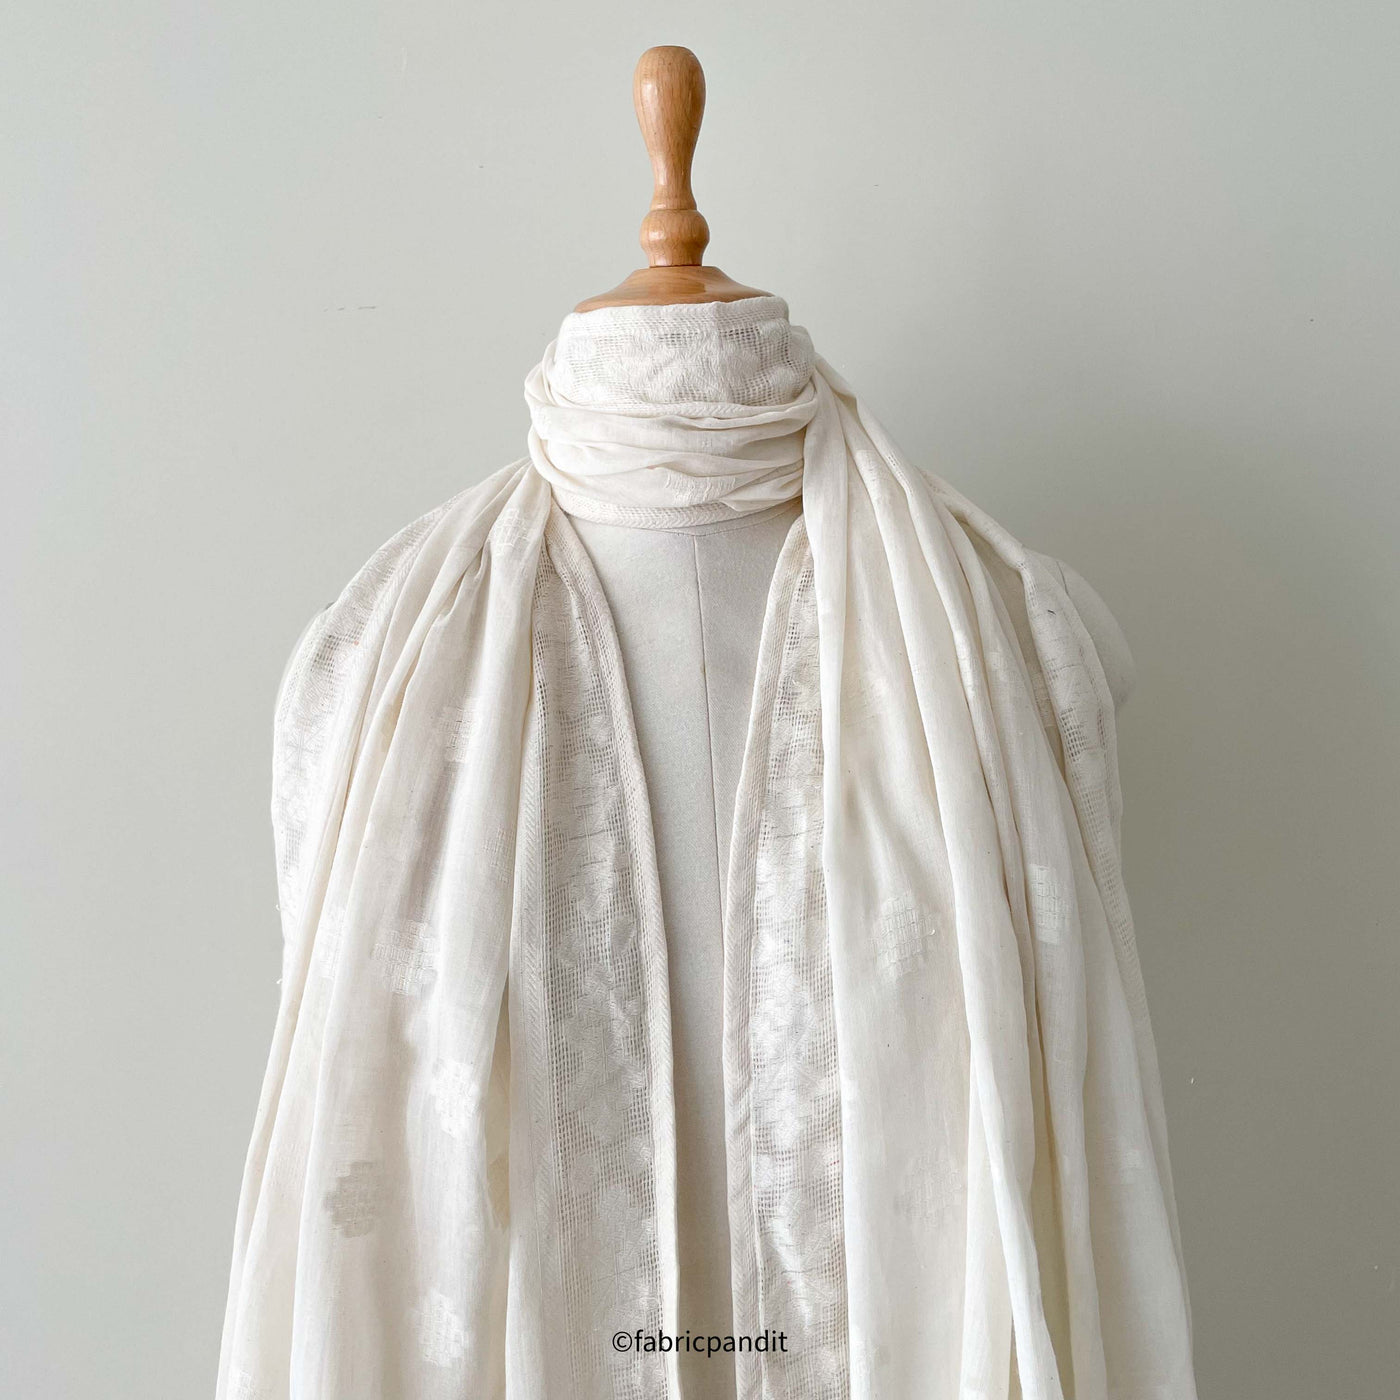 Fabric Pandit Dupatta Soft White Dyeable Woven Classic Jamdani Pure Mul Cotton Dupatta (2.3 Meters)